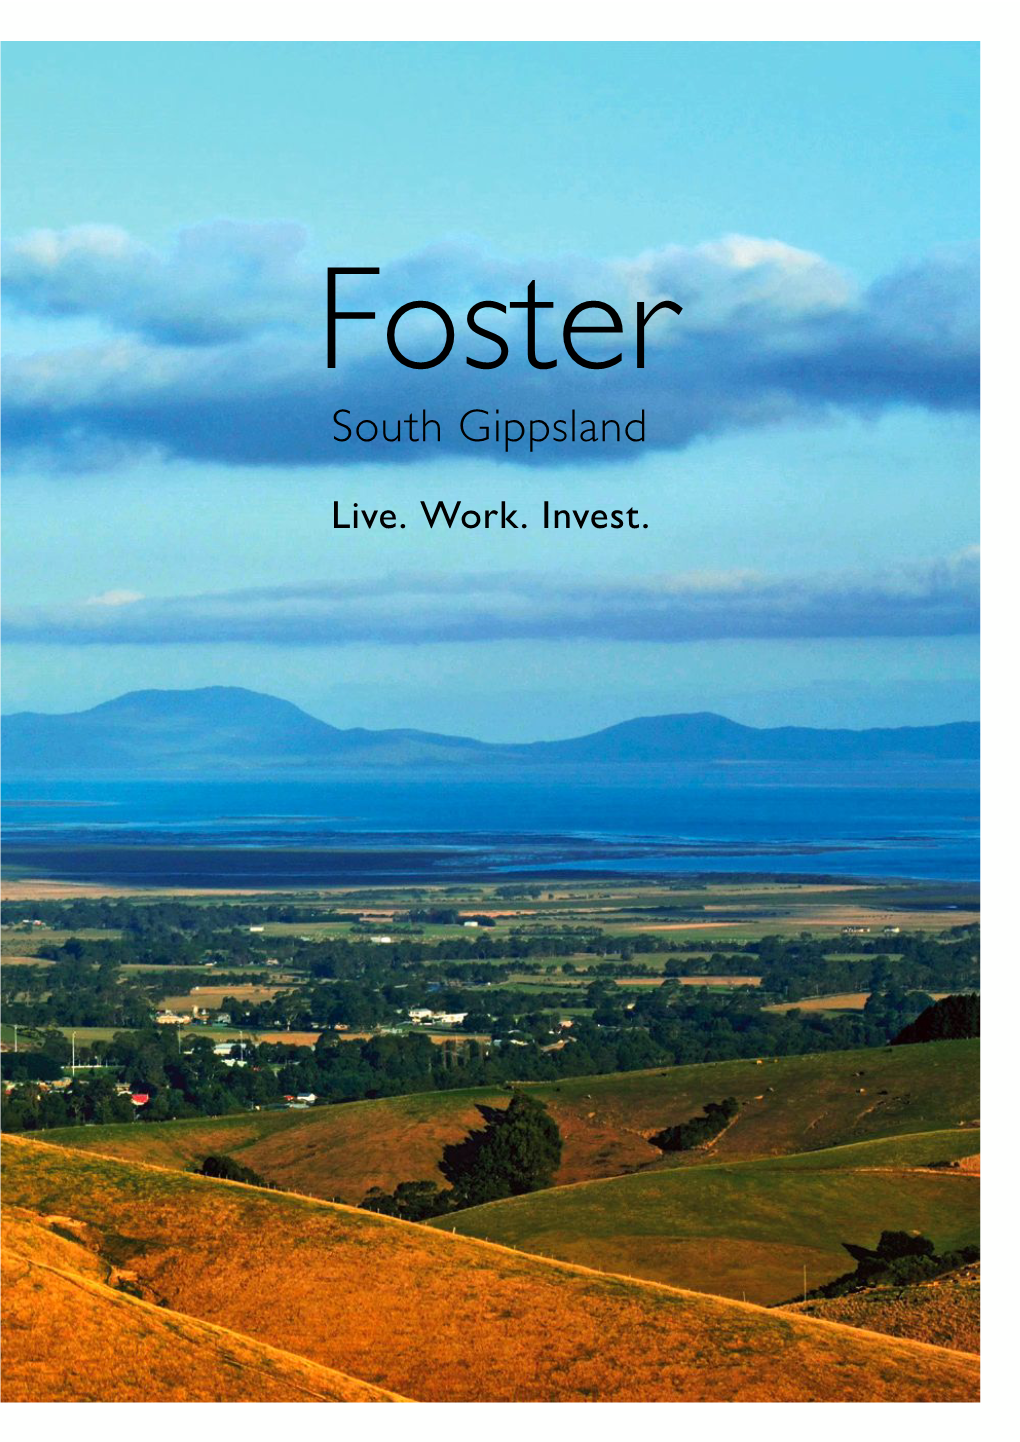 Foster South Gippsland